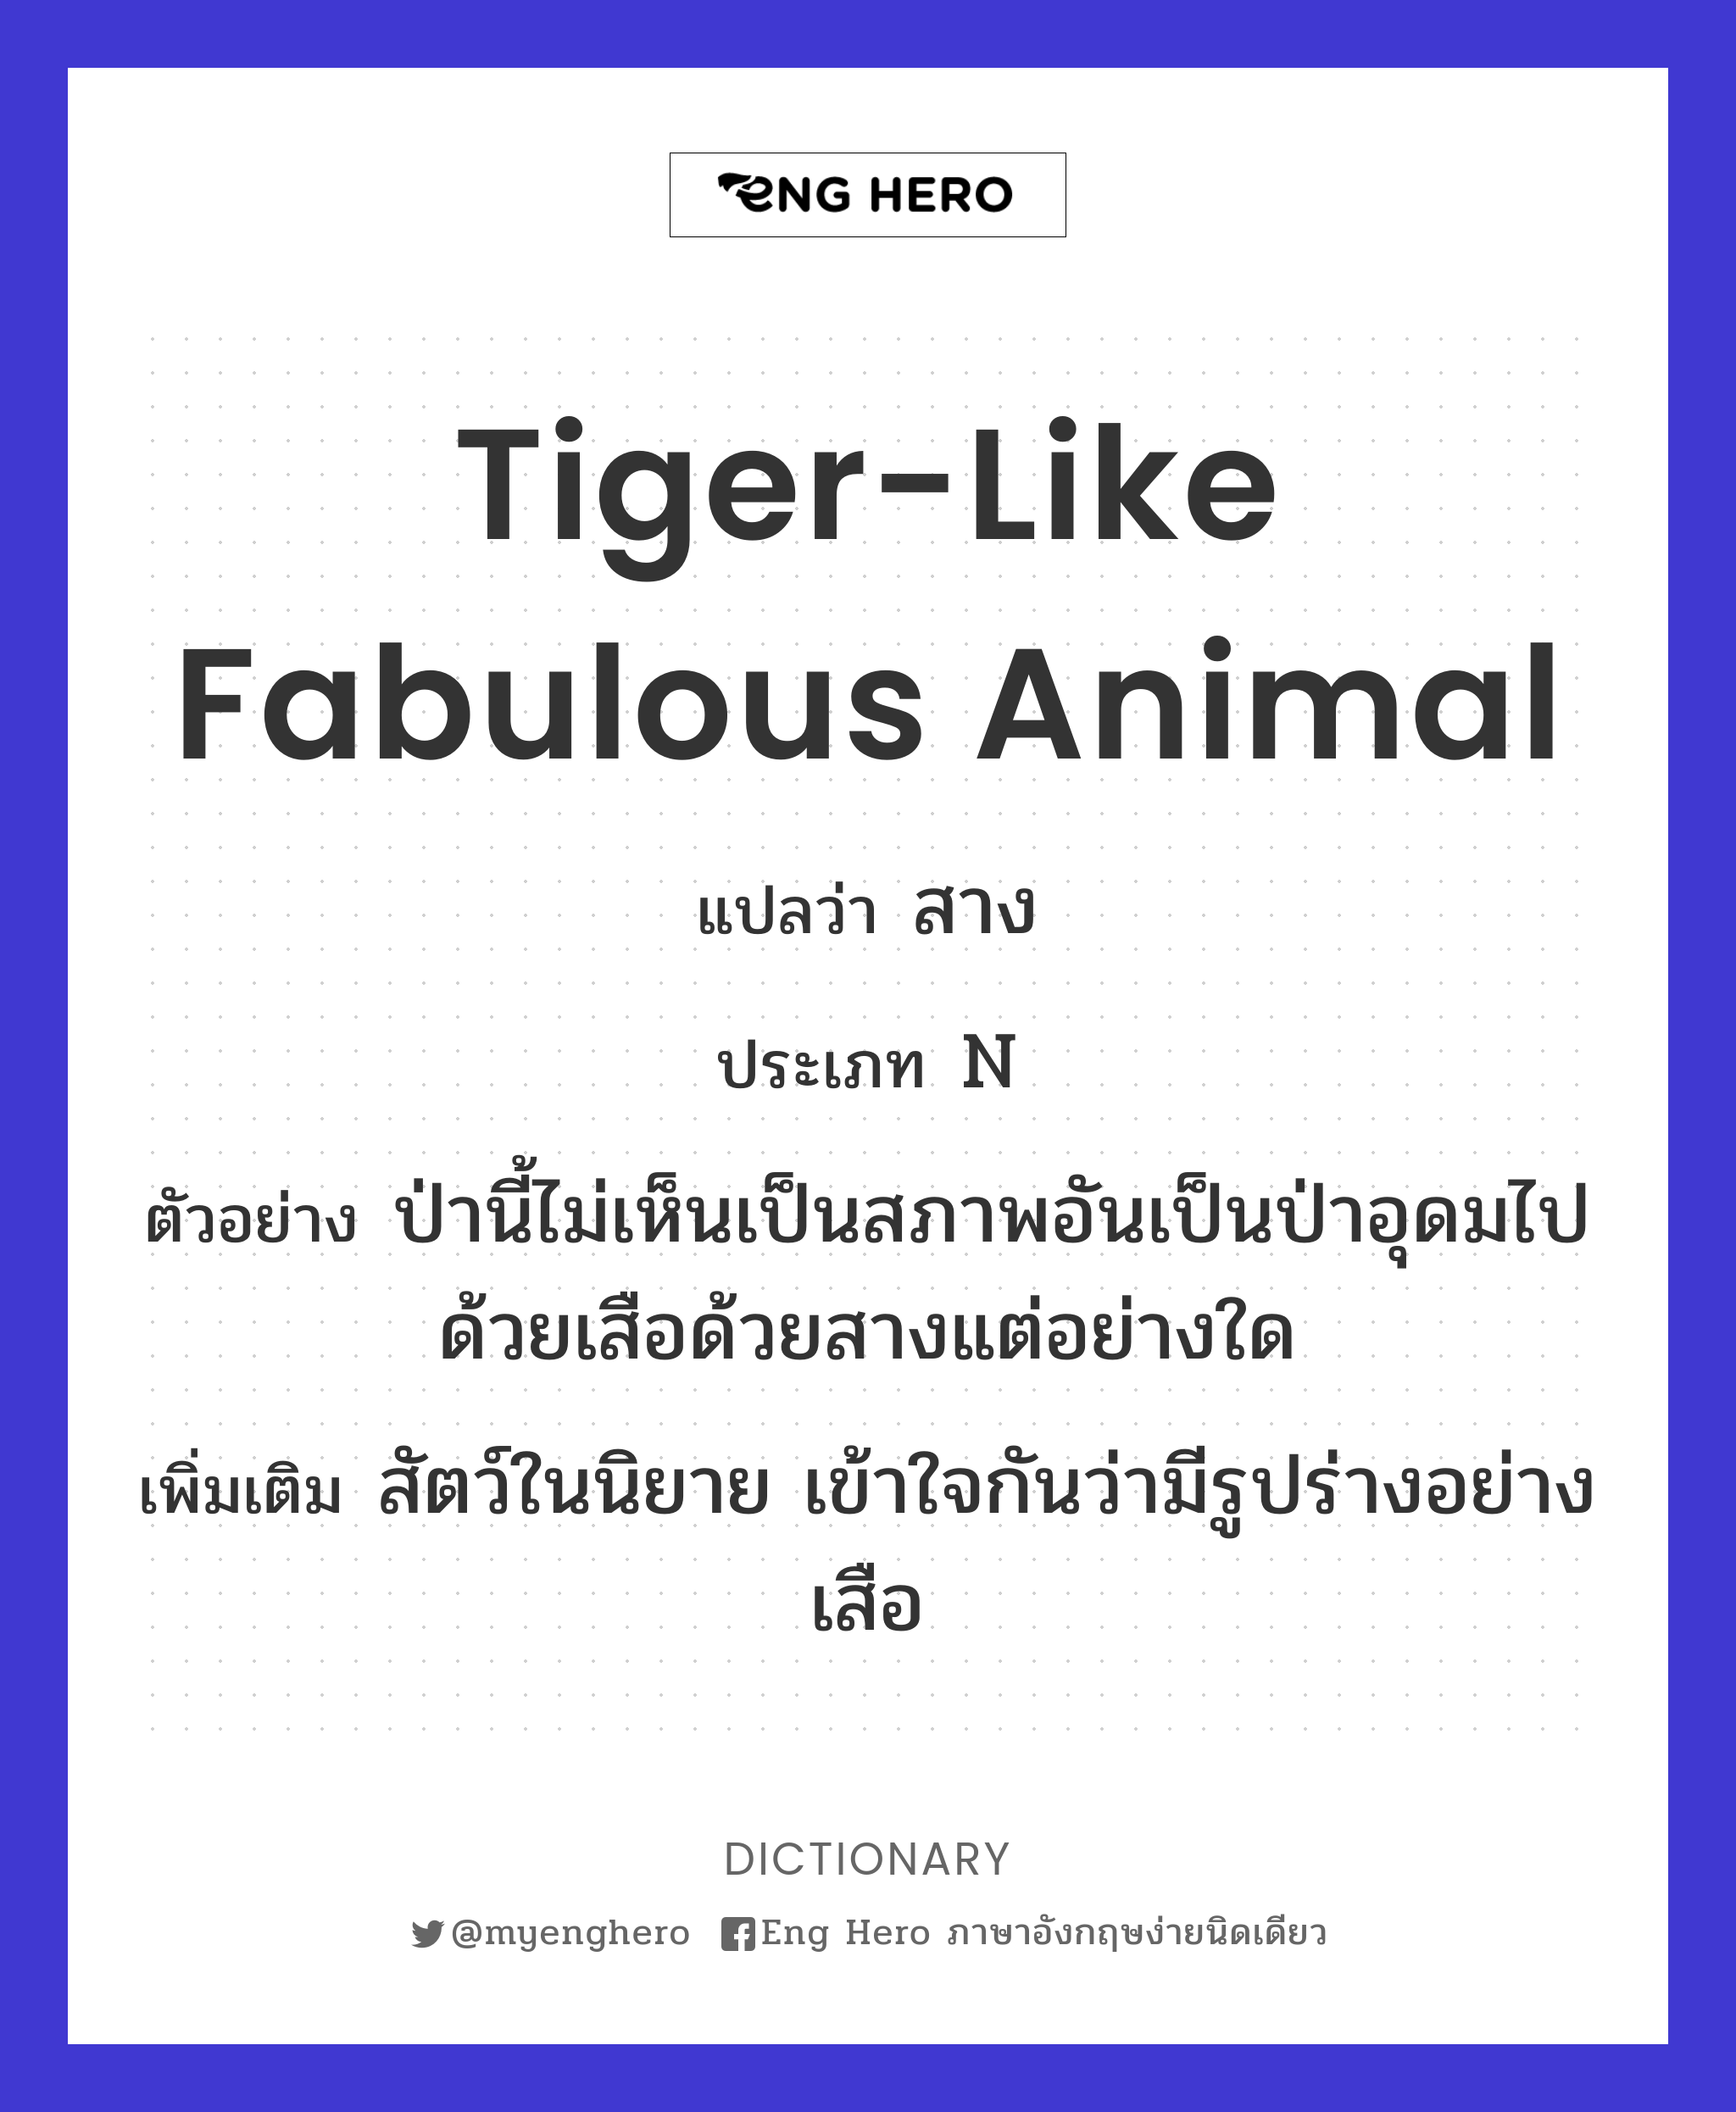 tiger-like fabulous animal